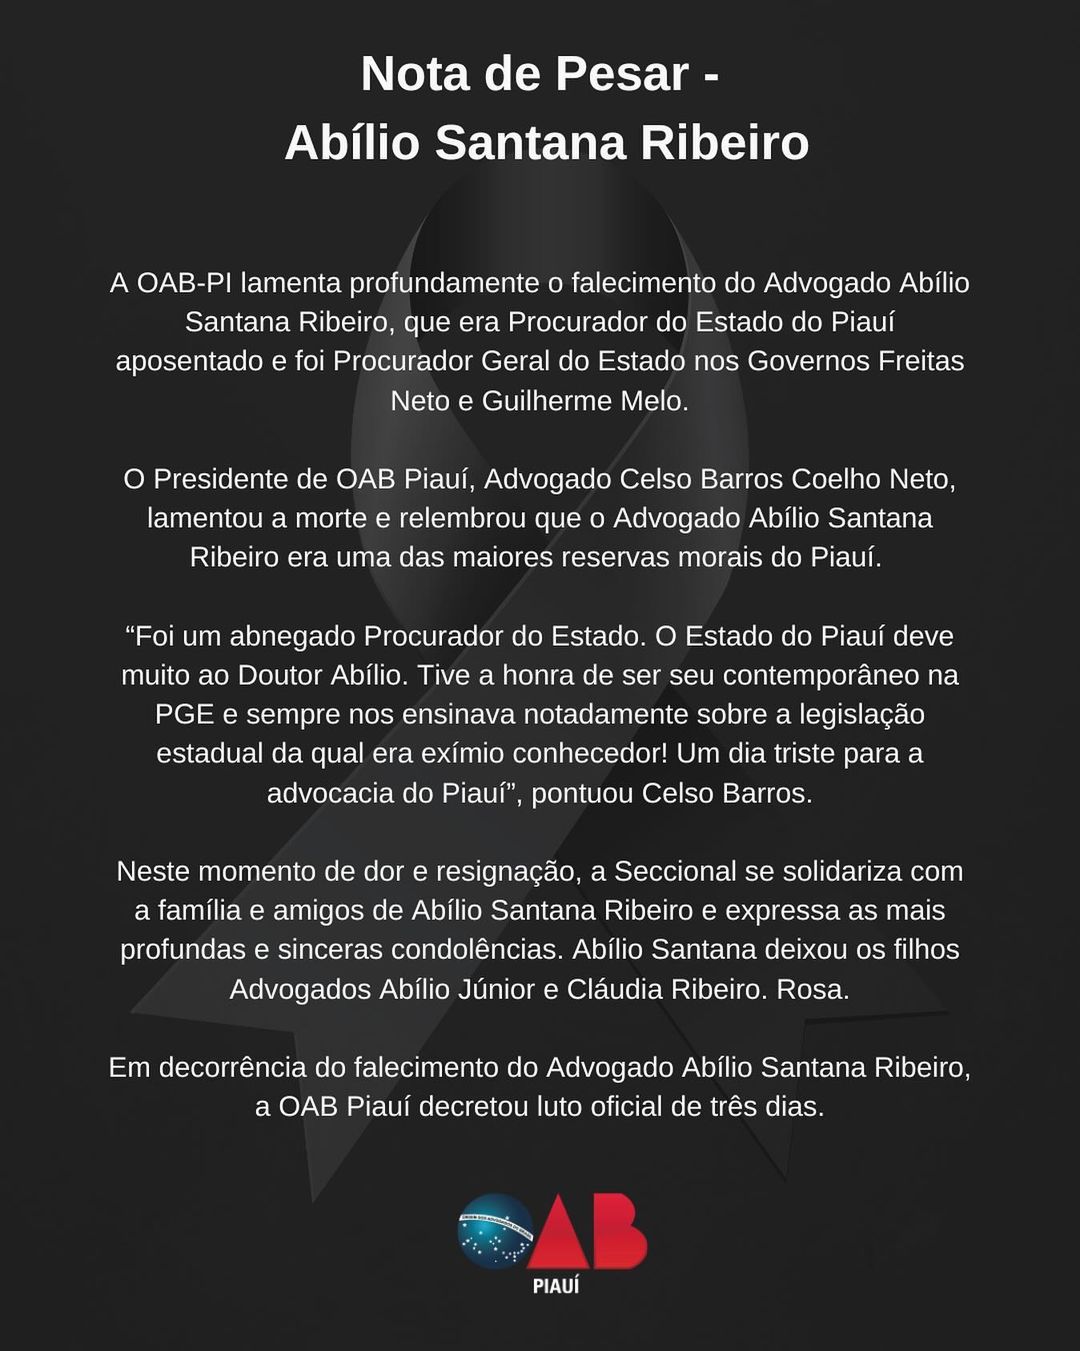 Nota de pesar: Abílio de Santana Ribeiro, por OAB-PI.